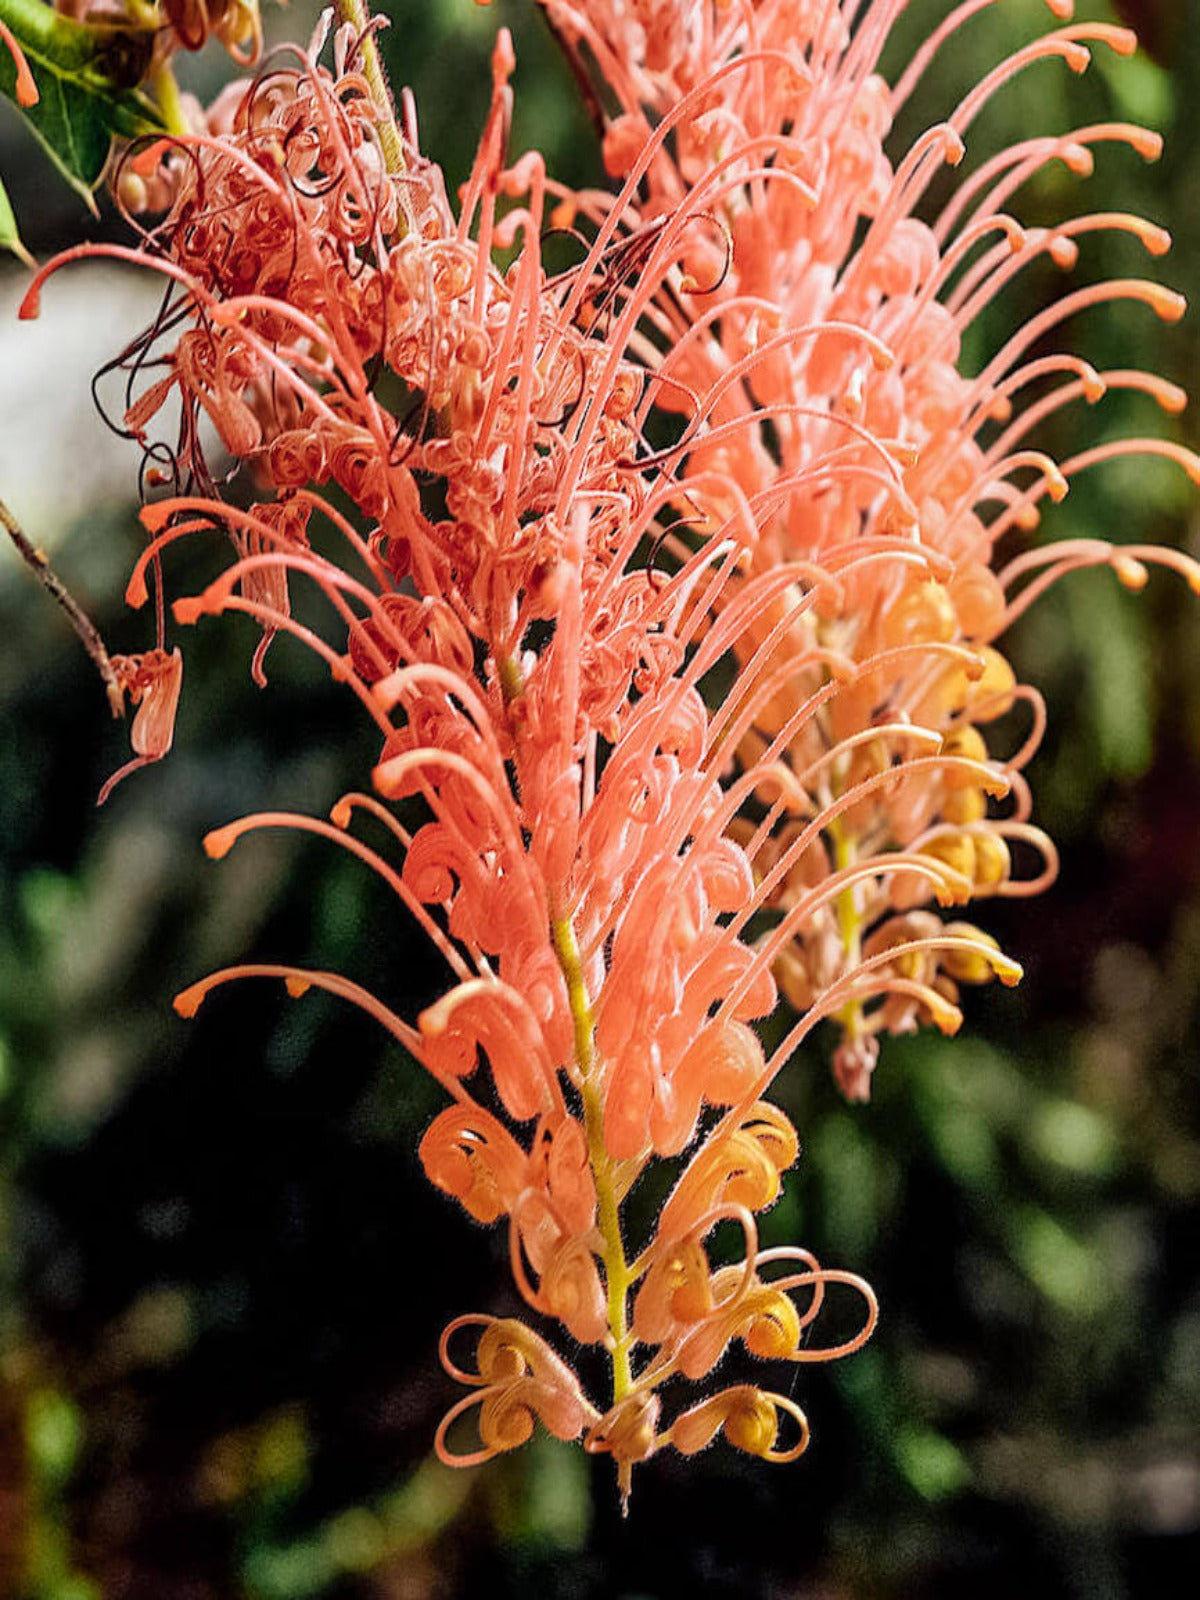 Spider Flower - Australian Birthflower Necklace - March